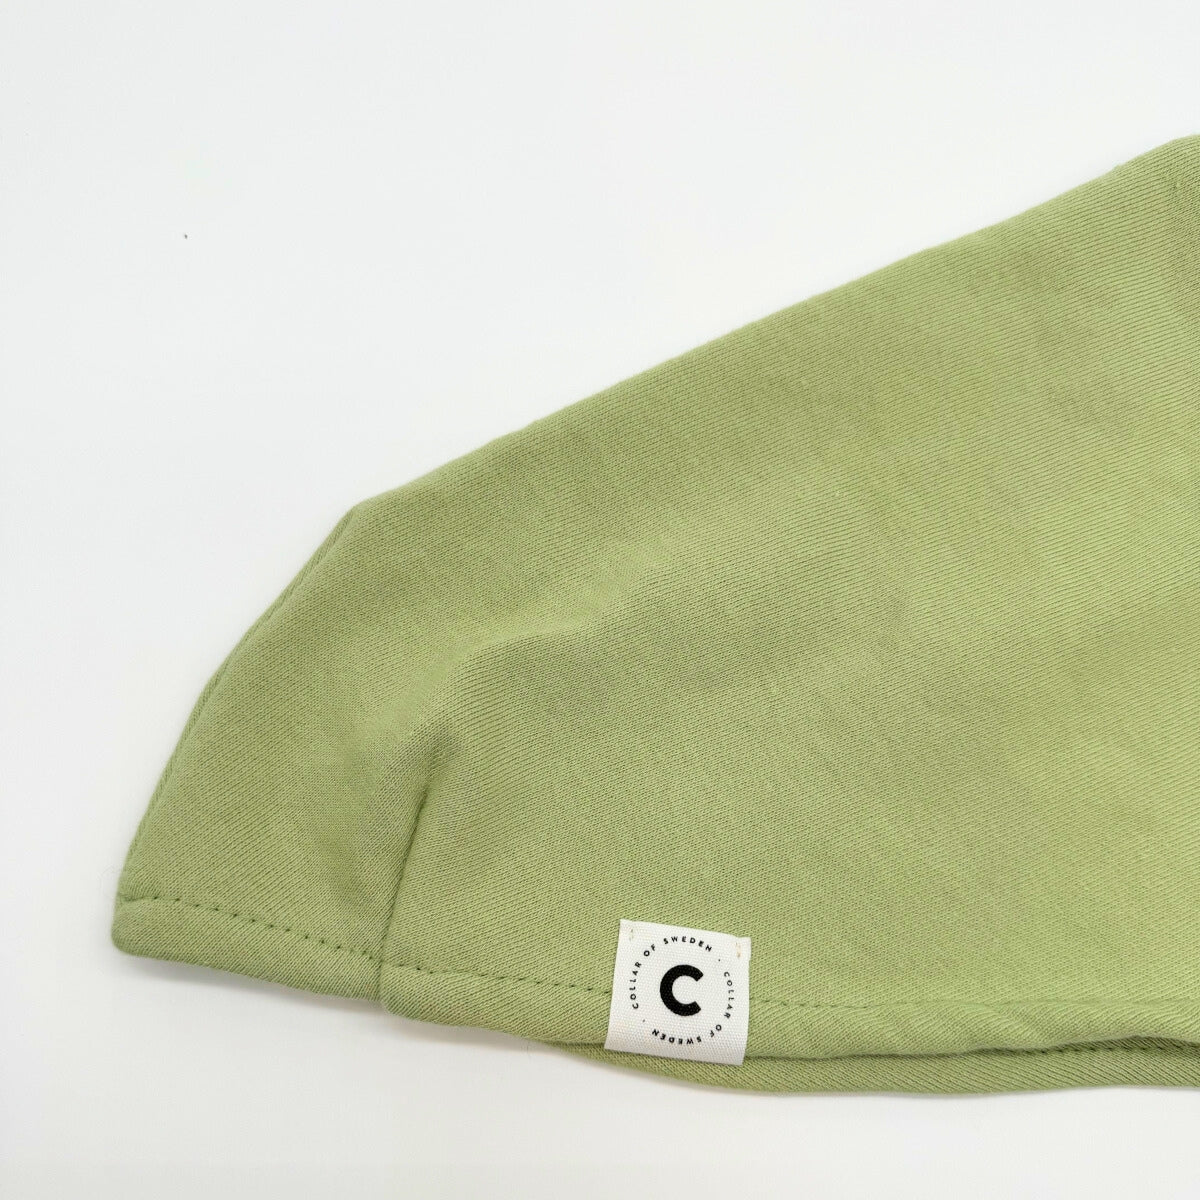 italian-greyhound-sweater-pastel-green-sweatshirt-detail_6af5bbdd-a6ff-4f2f-976d-4e5d78da0904.jpg